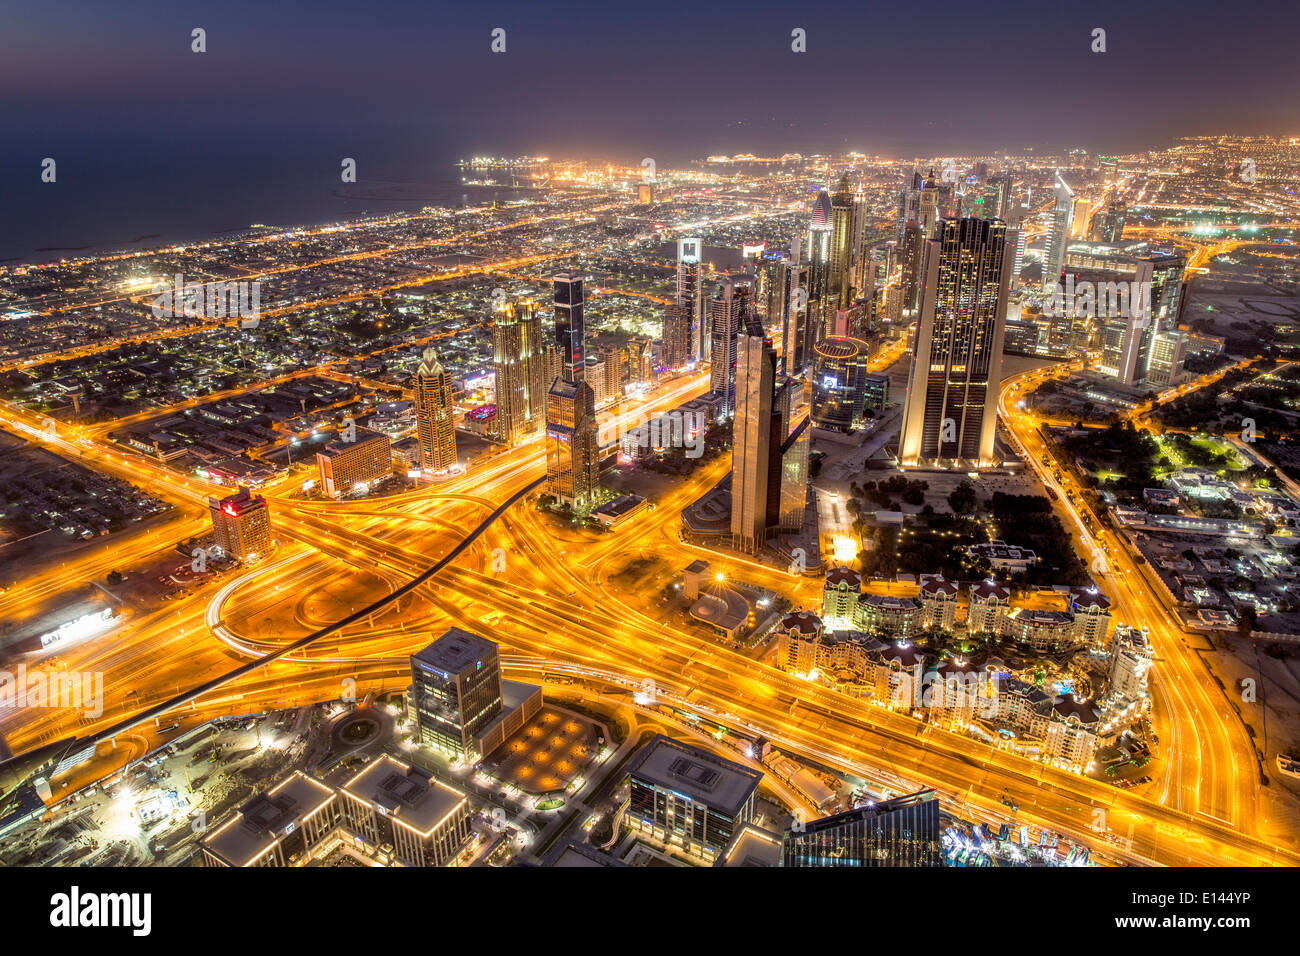 Vereinigte Arabische Emirate, Dubai, finanzielle Stadtzentrum, Sheikh Zayed Road. Blick vom Burj Khalifa, dem höchsten Gebäude. Twilight Stockfoto